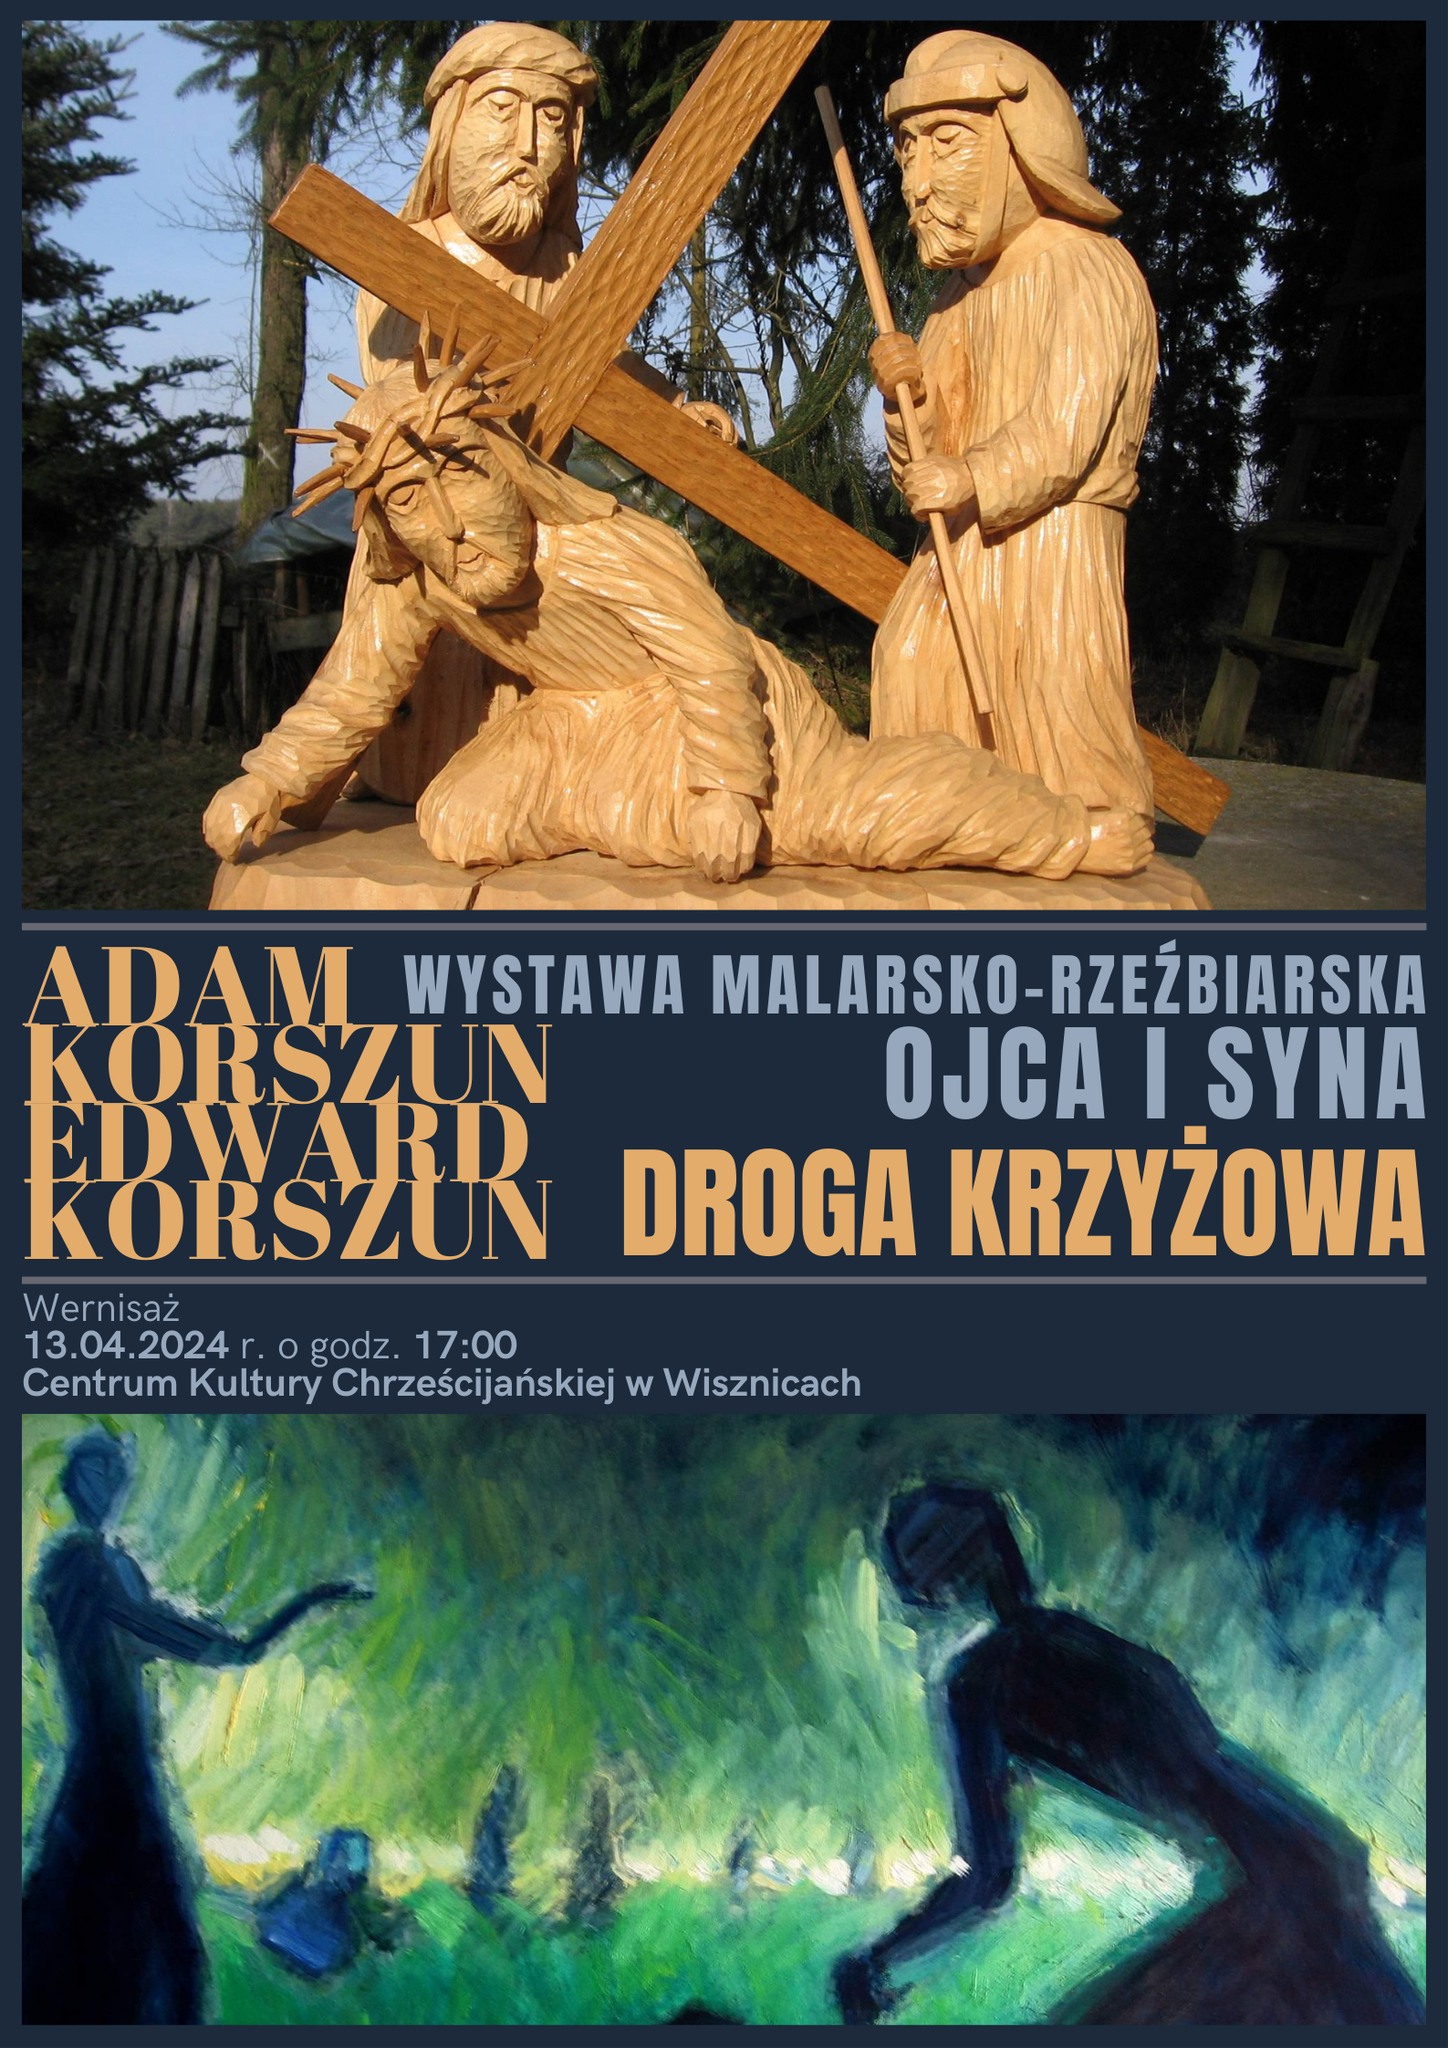 Wystawa malarsko-rzeźbiarska Adama i Edwarda Korszunów